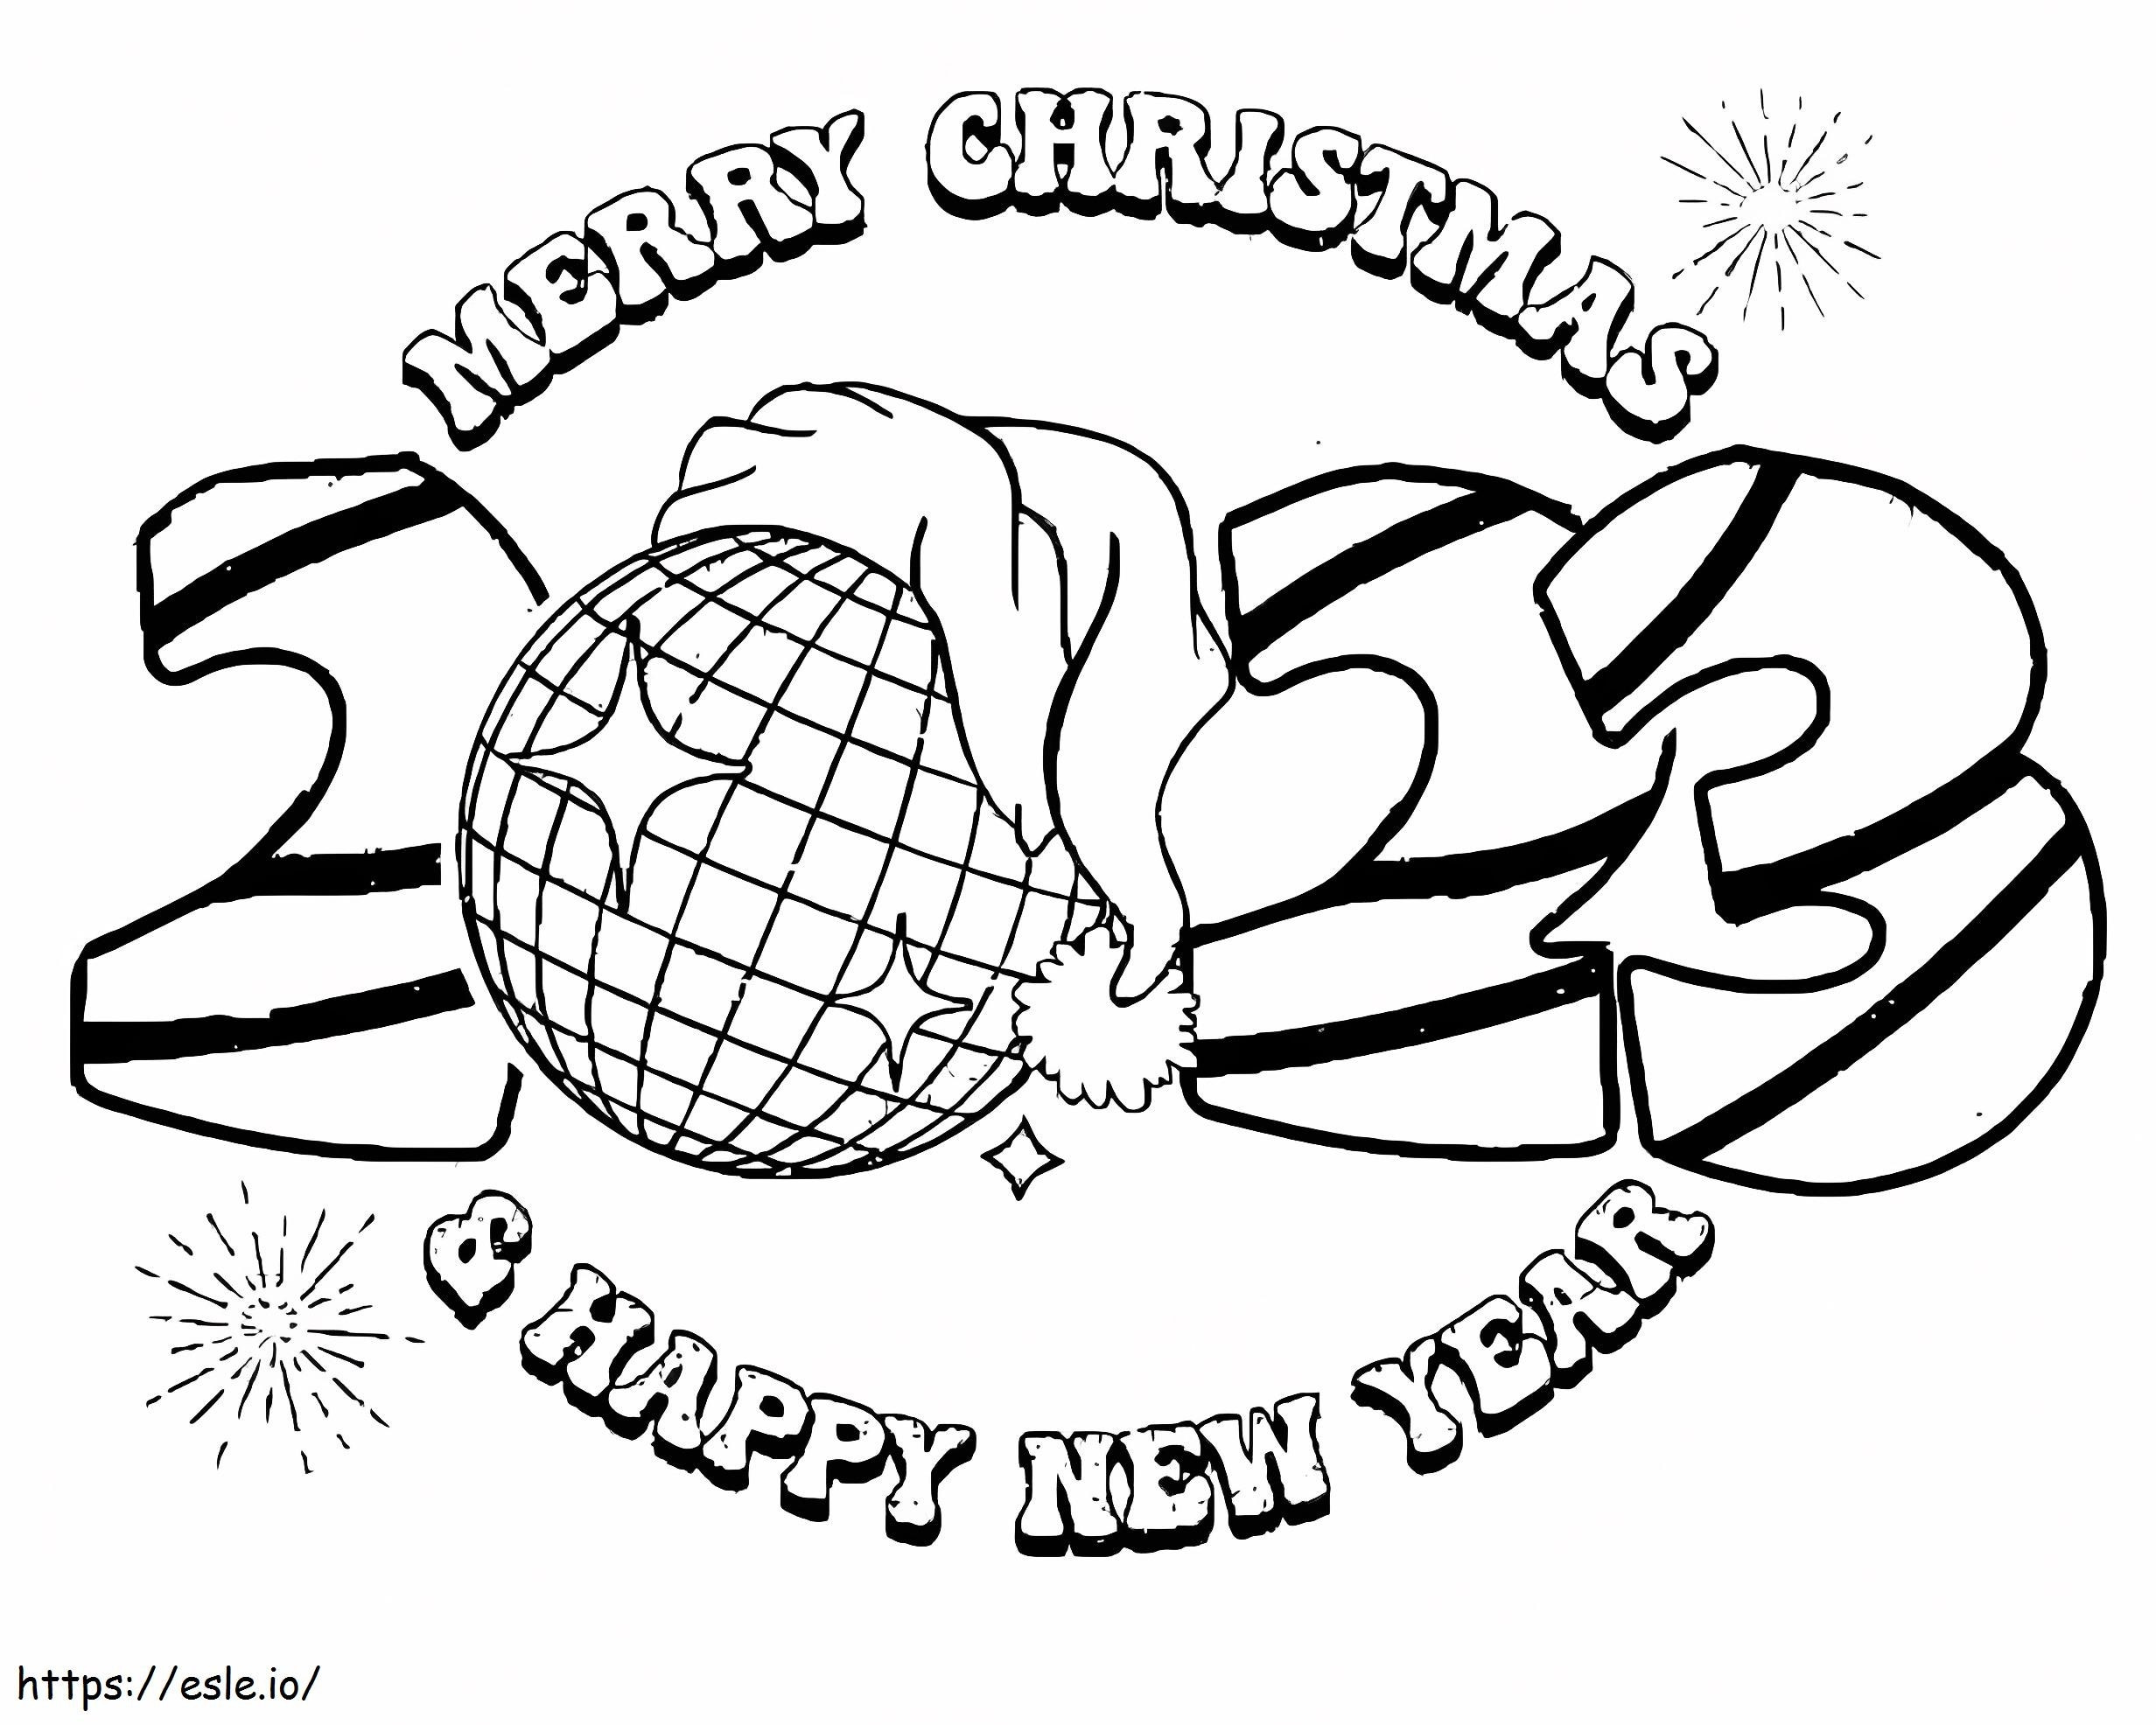 Frohe Weihnachten und ein glückliches neues Jahr 2023 ausmalbilder